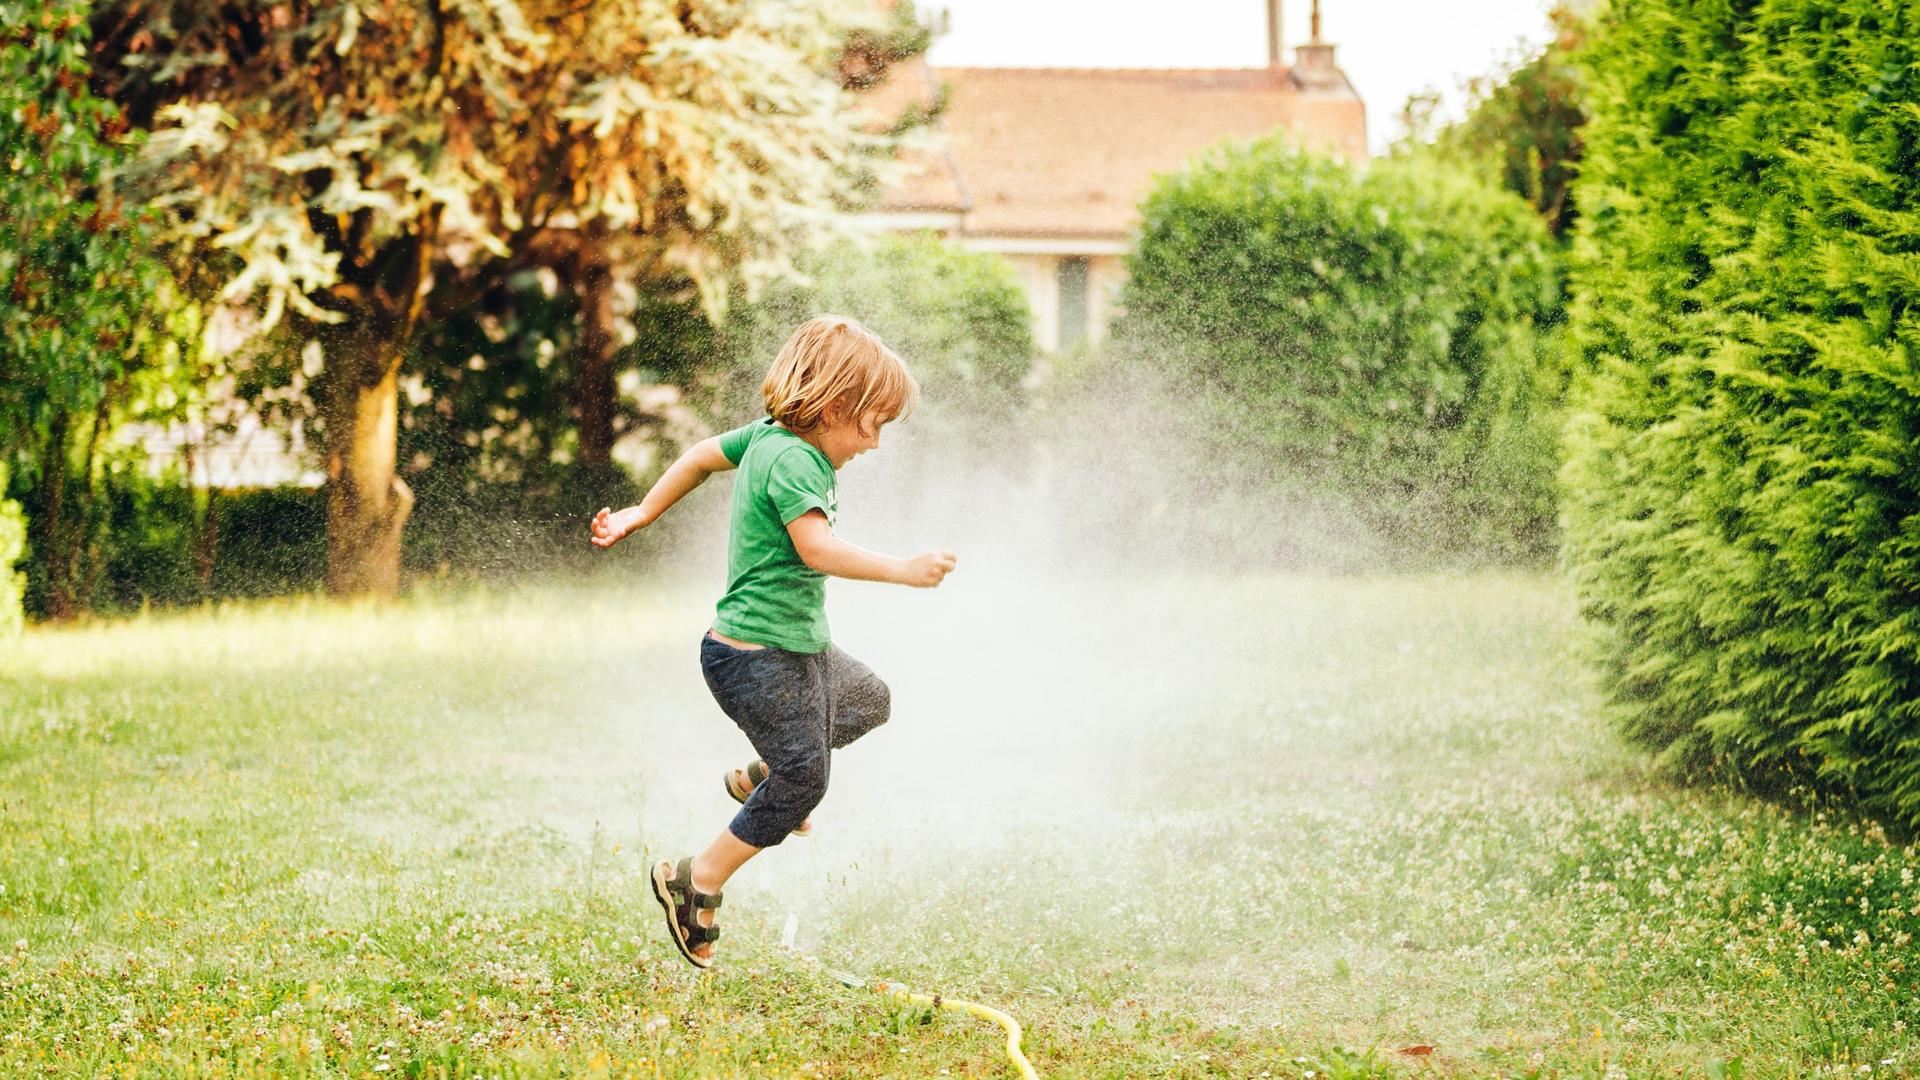 Kind springt über einen Gartensprinkler auf einer Wiese.